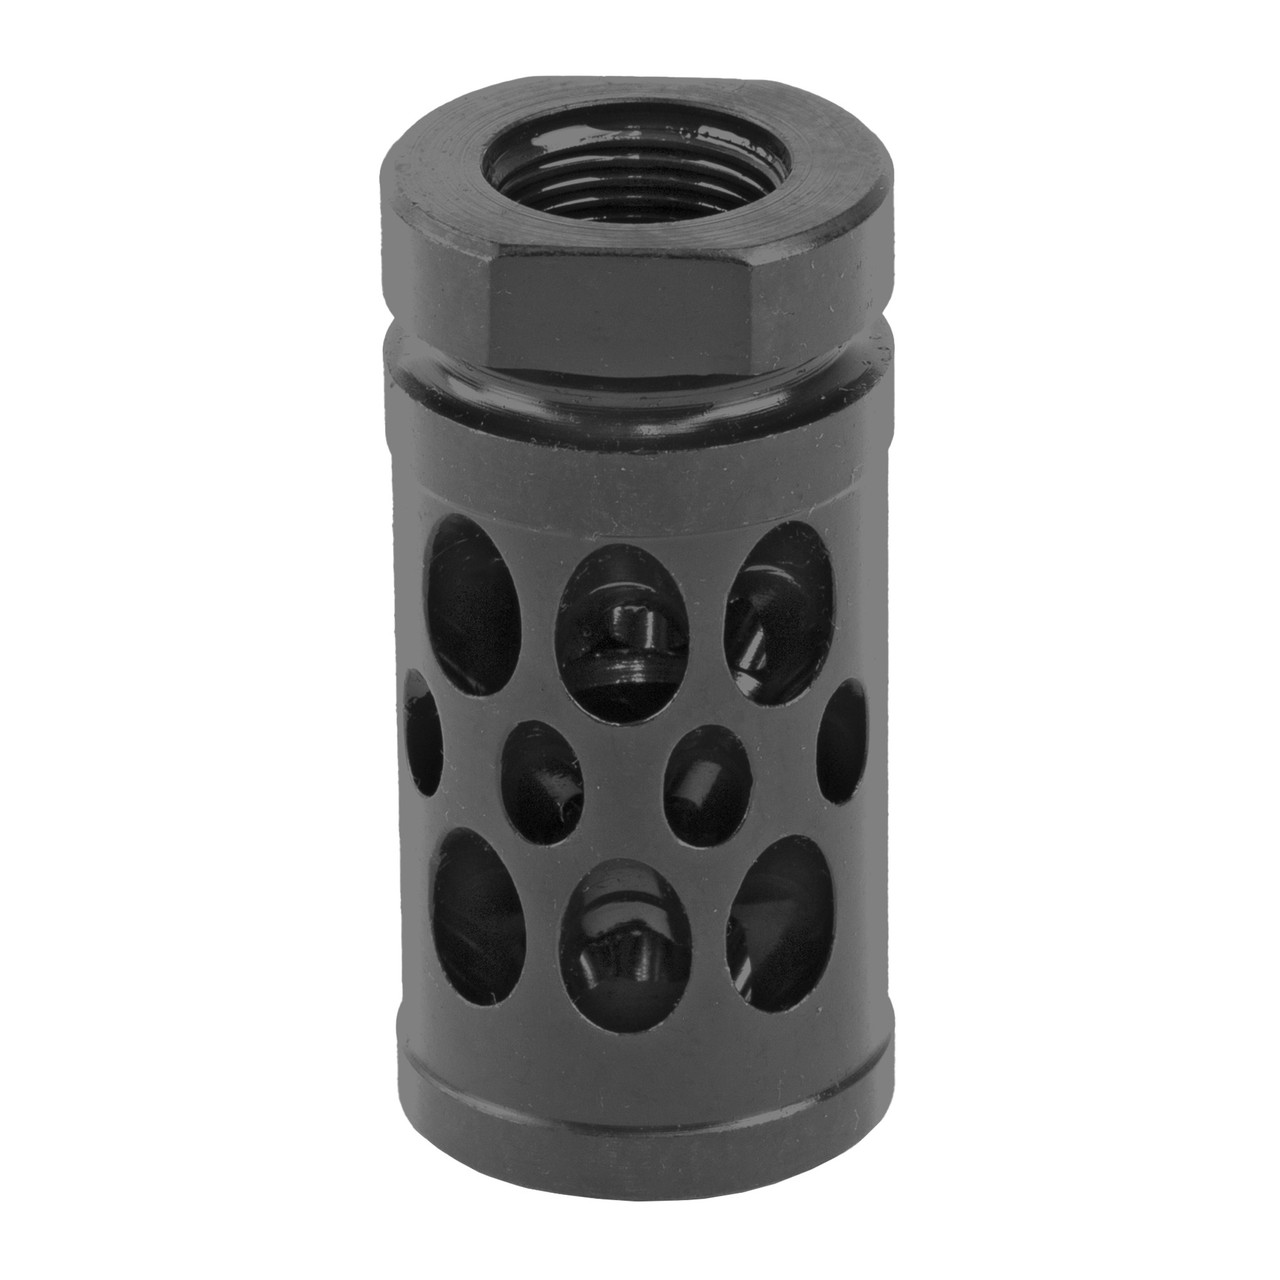 Norsso N320 BBK Compensator, 9mm, Black Finish